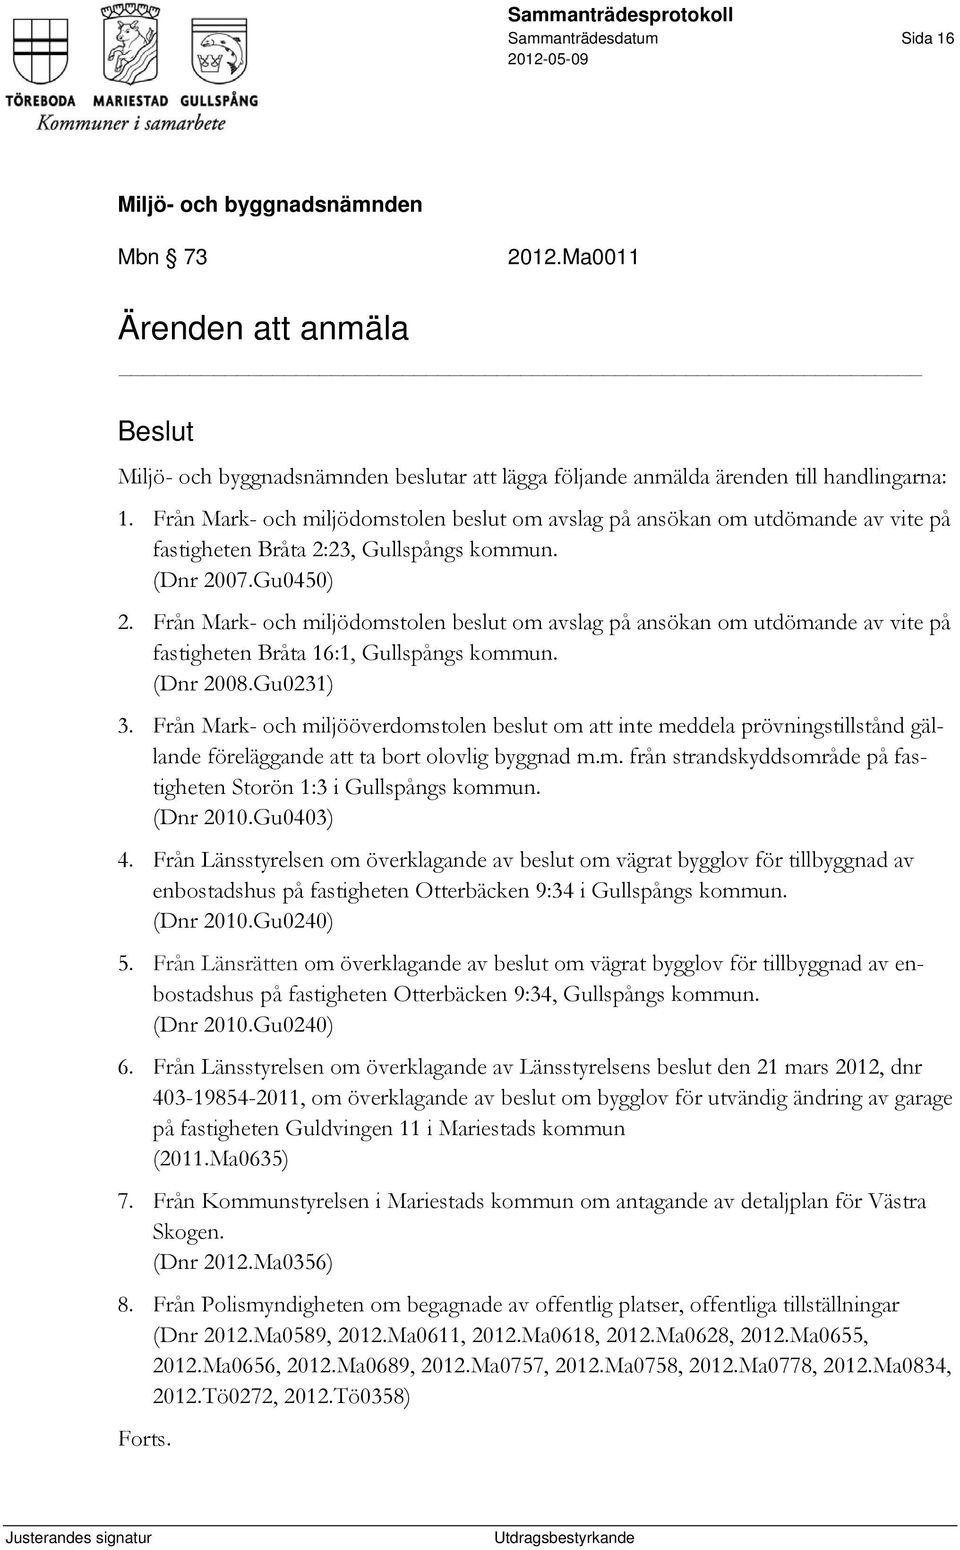 Från Mark- och miljödomstolen beslut om avslag på ansökan om utdömande av vite på fastigheten Bråta 16:1, Gullspångs kommun. (Dnr 2008.Gu0231) 3.